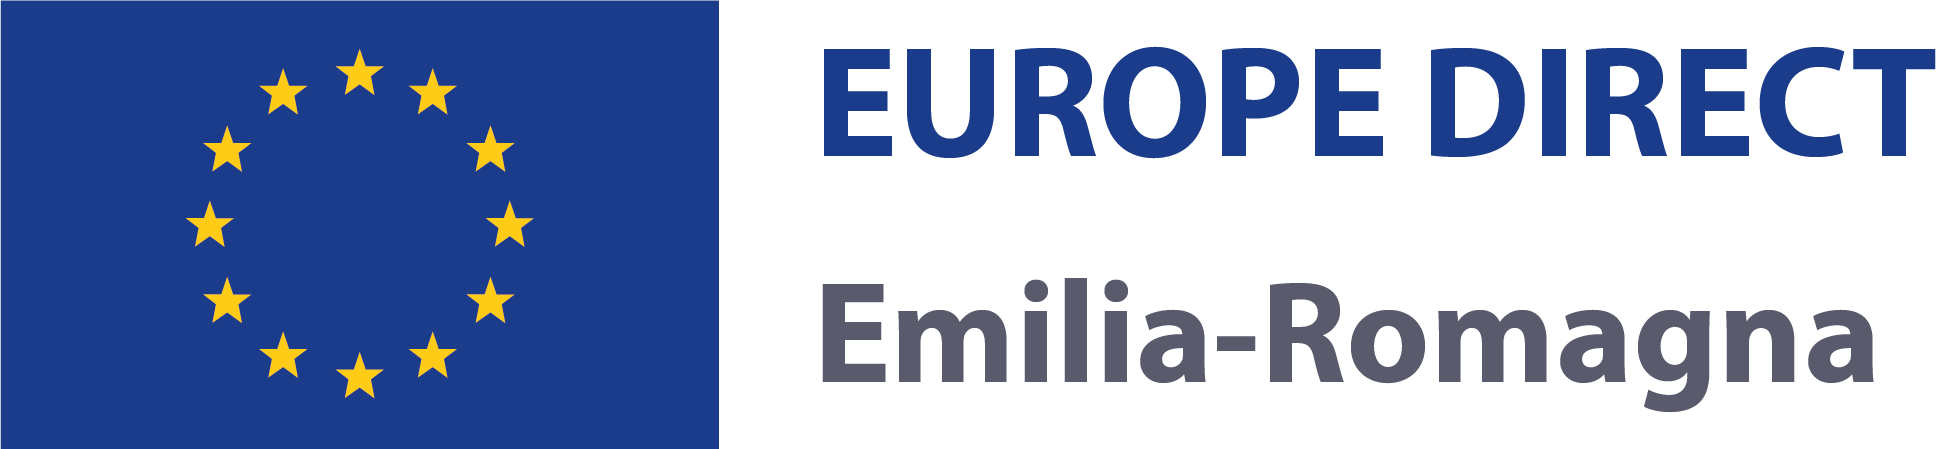 Europe Direct Emilia-Romagna